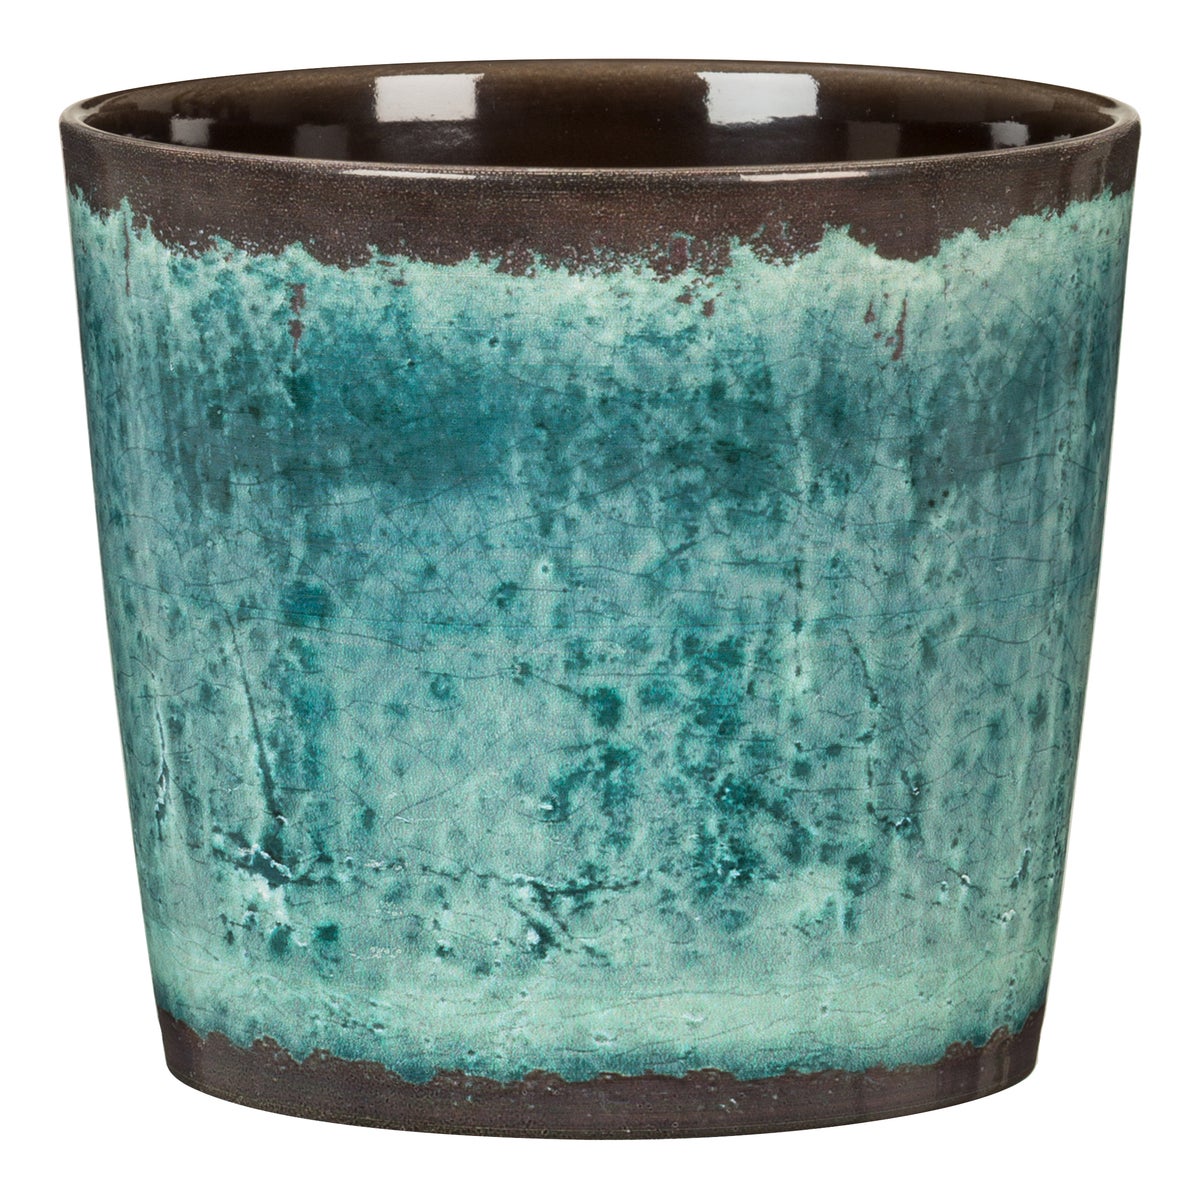 Scheurich TRADITION, Blumentopf aus Keramik,  Farbe: Ocean Glaze, 15,1 cm Durchmesser, 13,5 cm hoch, 1,6 l Vol.